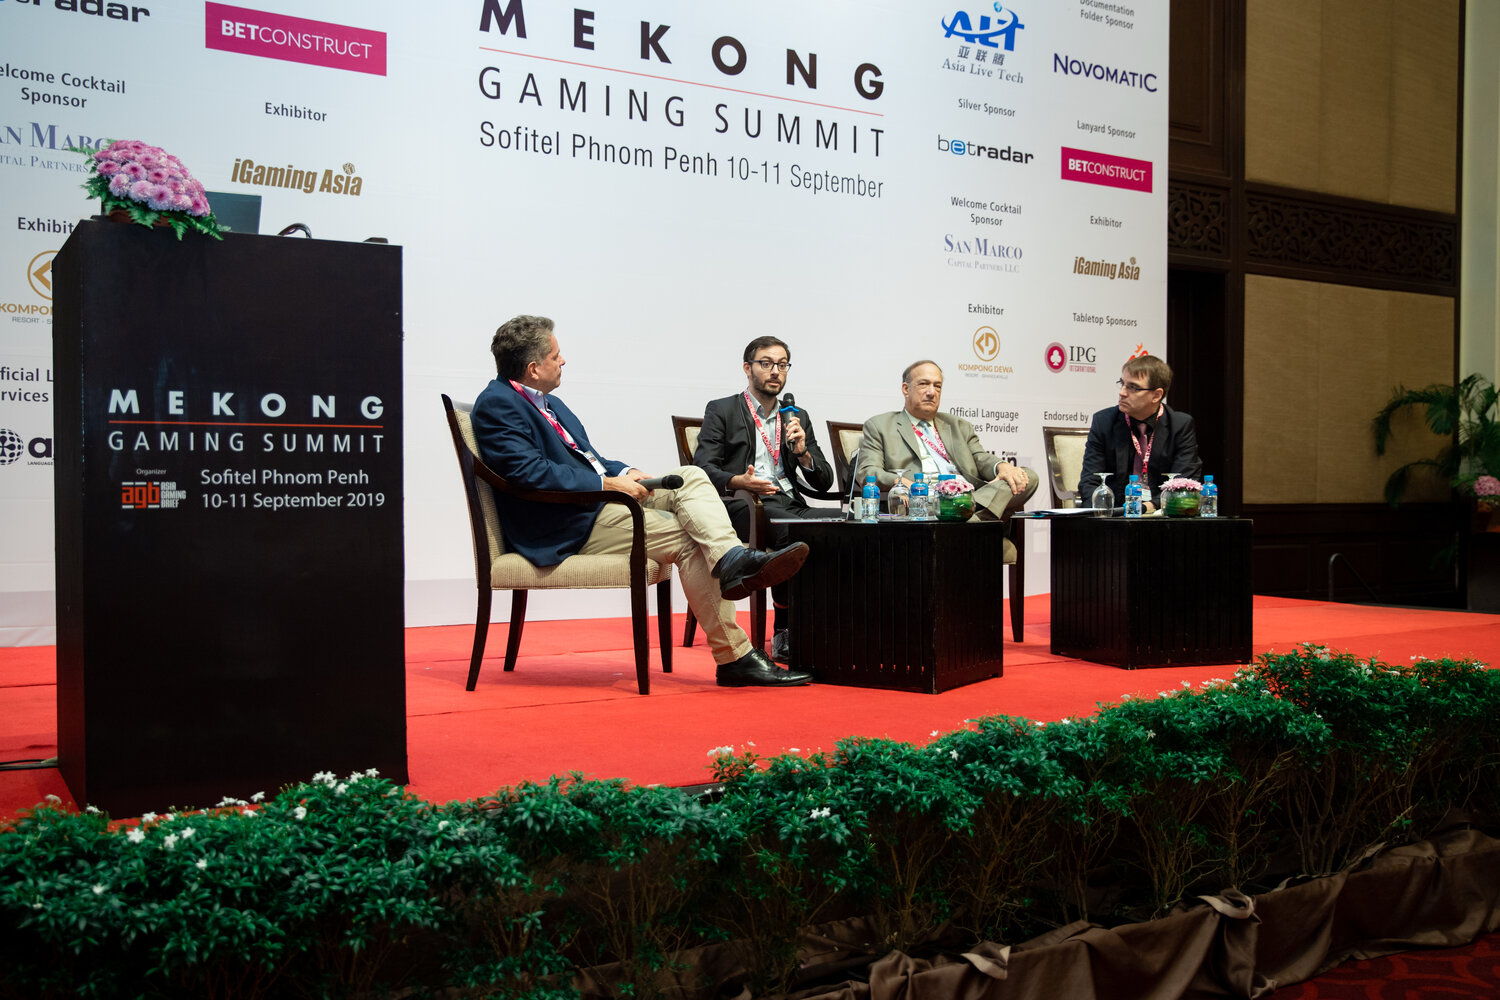 Mekong Gaming Summit 2019